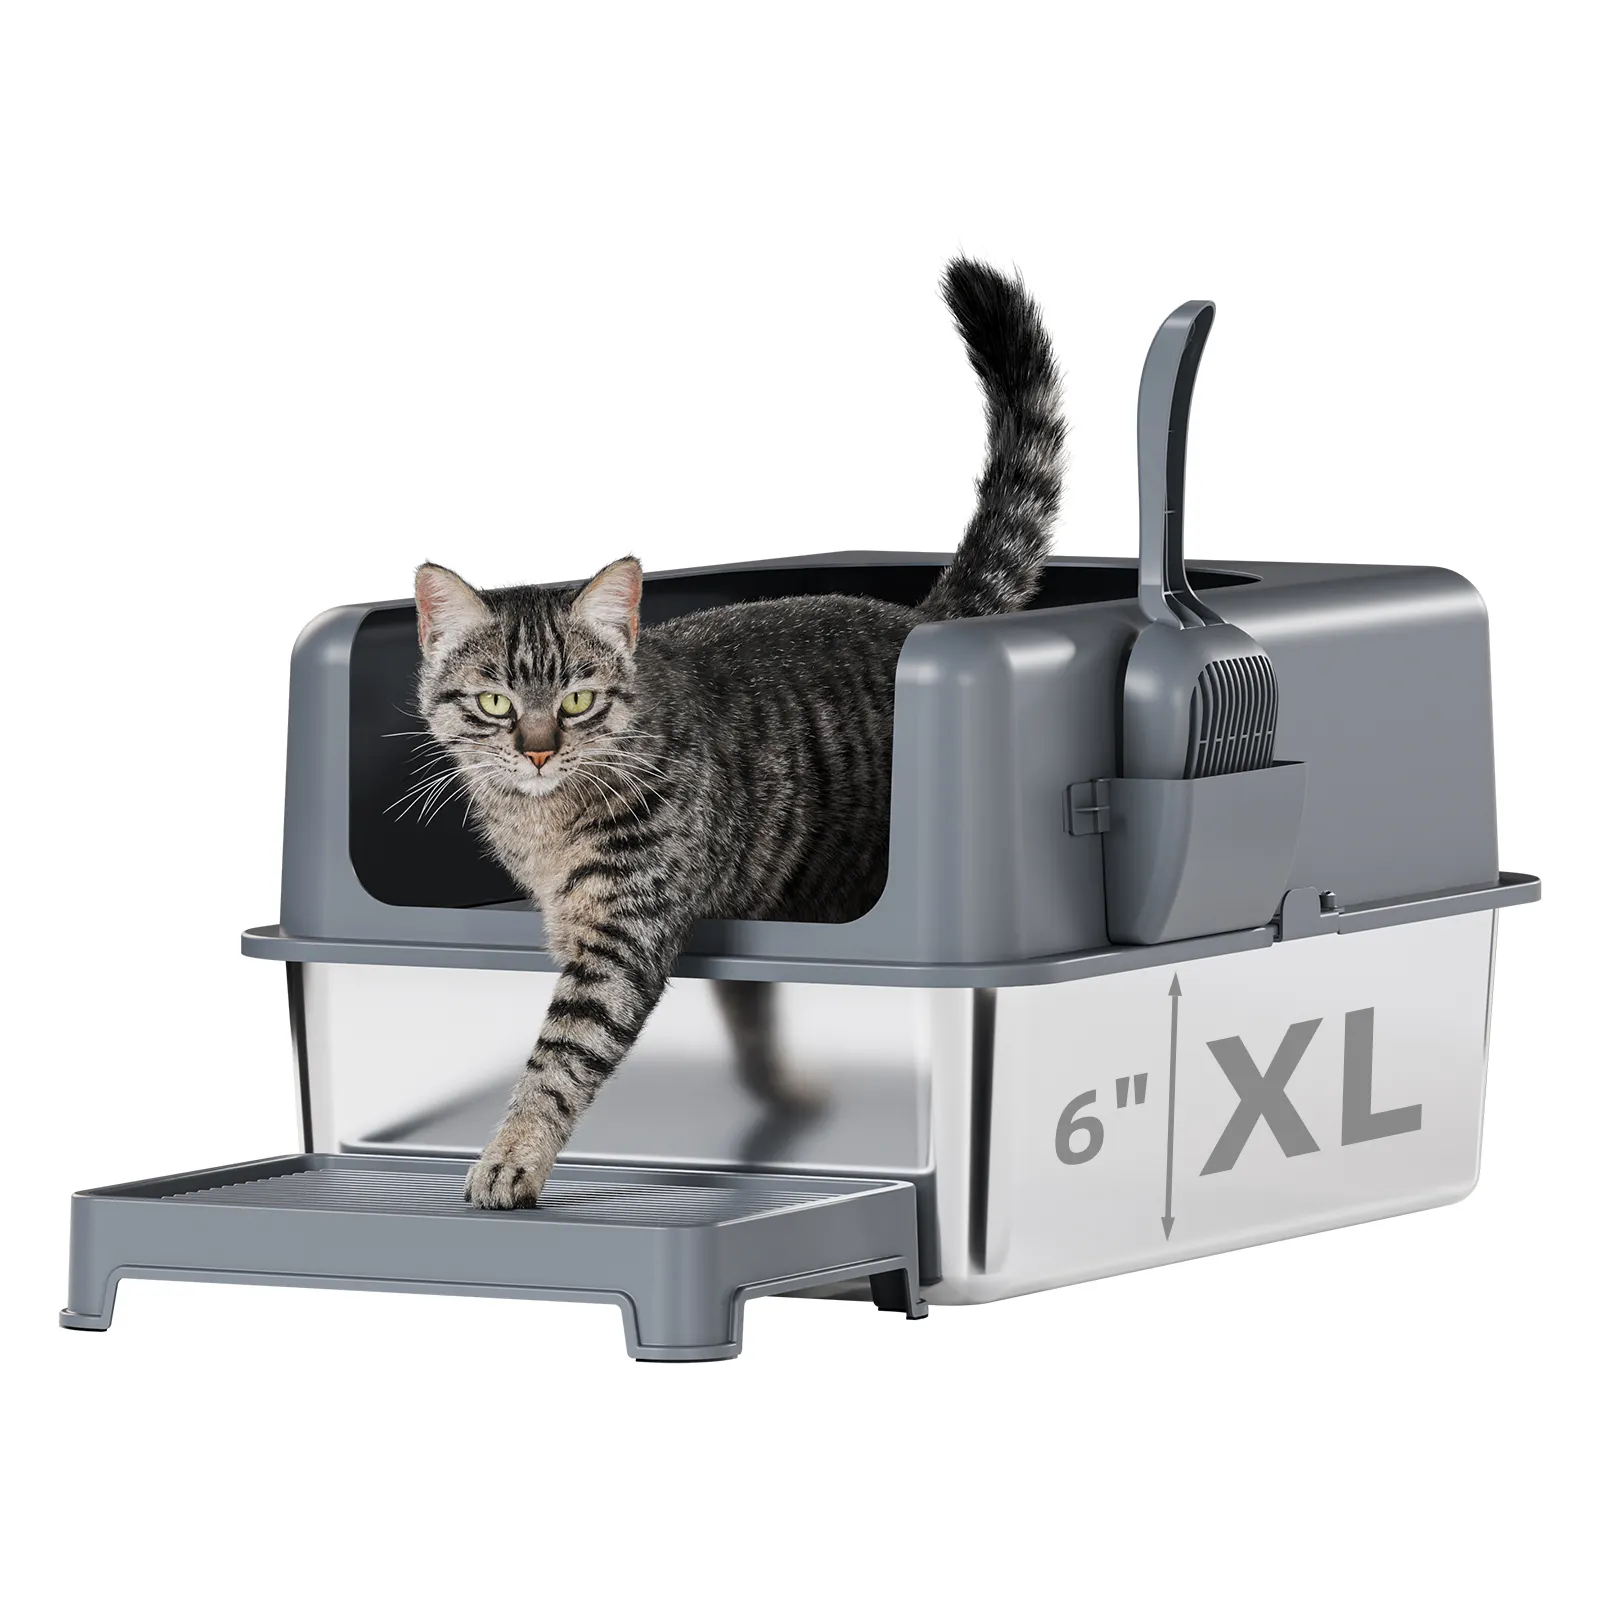 Caja de arena para gatos de acero inoxidable, extragrande para gatos grandes y múltiples con tapa, incluye tapete para ARENA y cuchara (24x16x6)